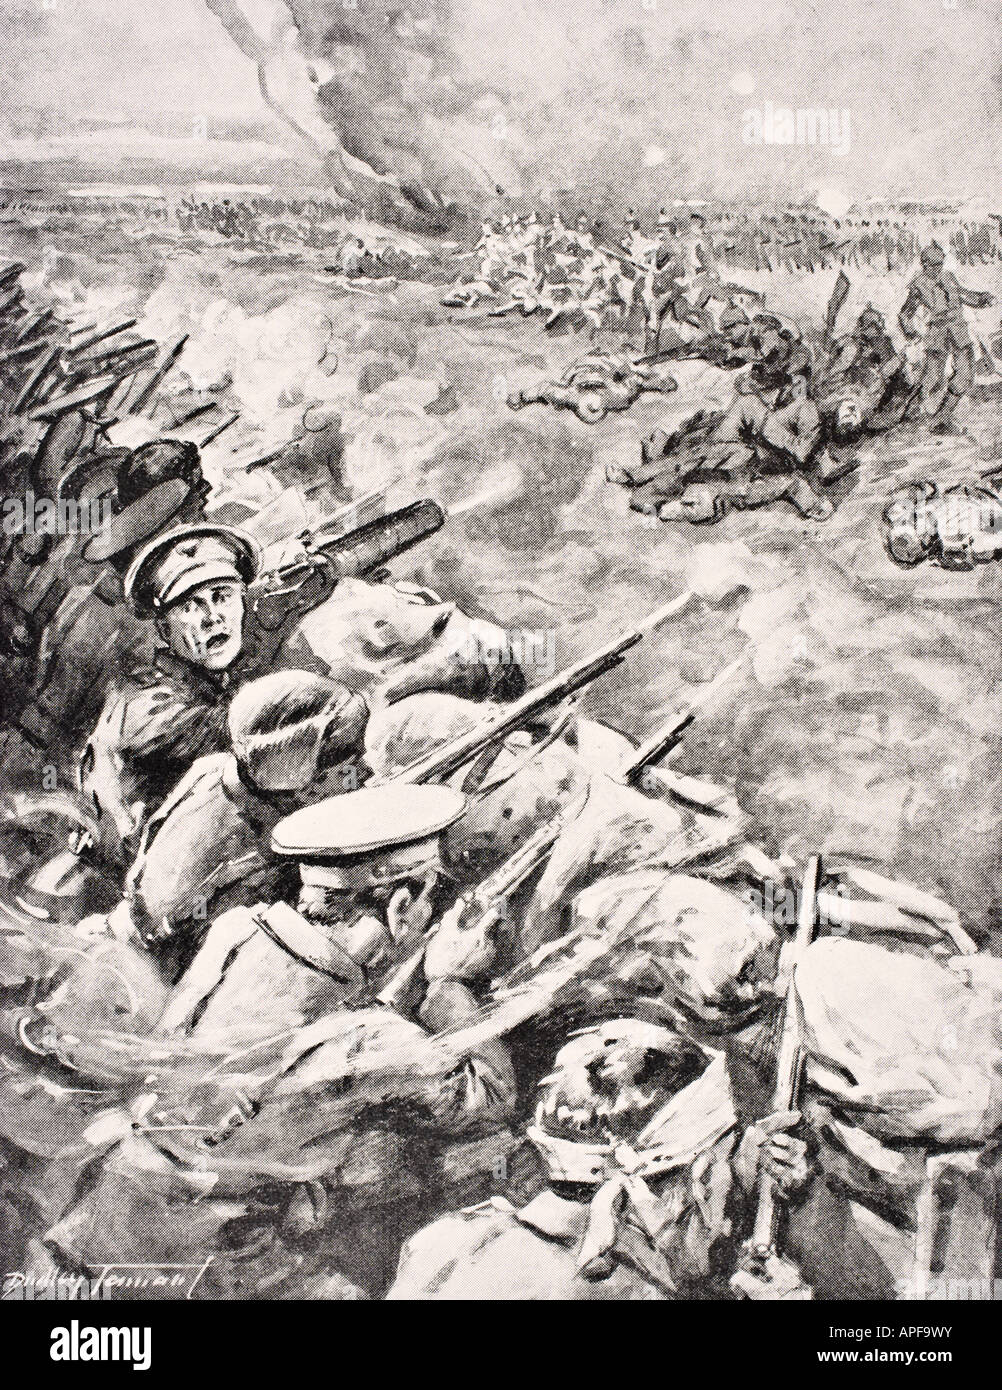 Deutsche Truppen gegen britische Schützengräben 1915 während des Ersten Weltkriegs. Stockfoto